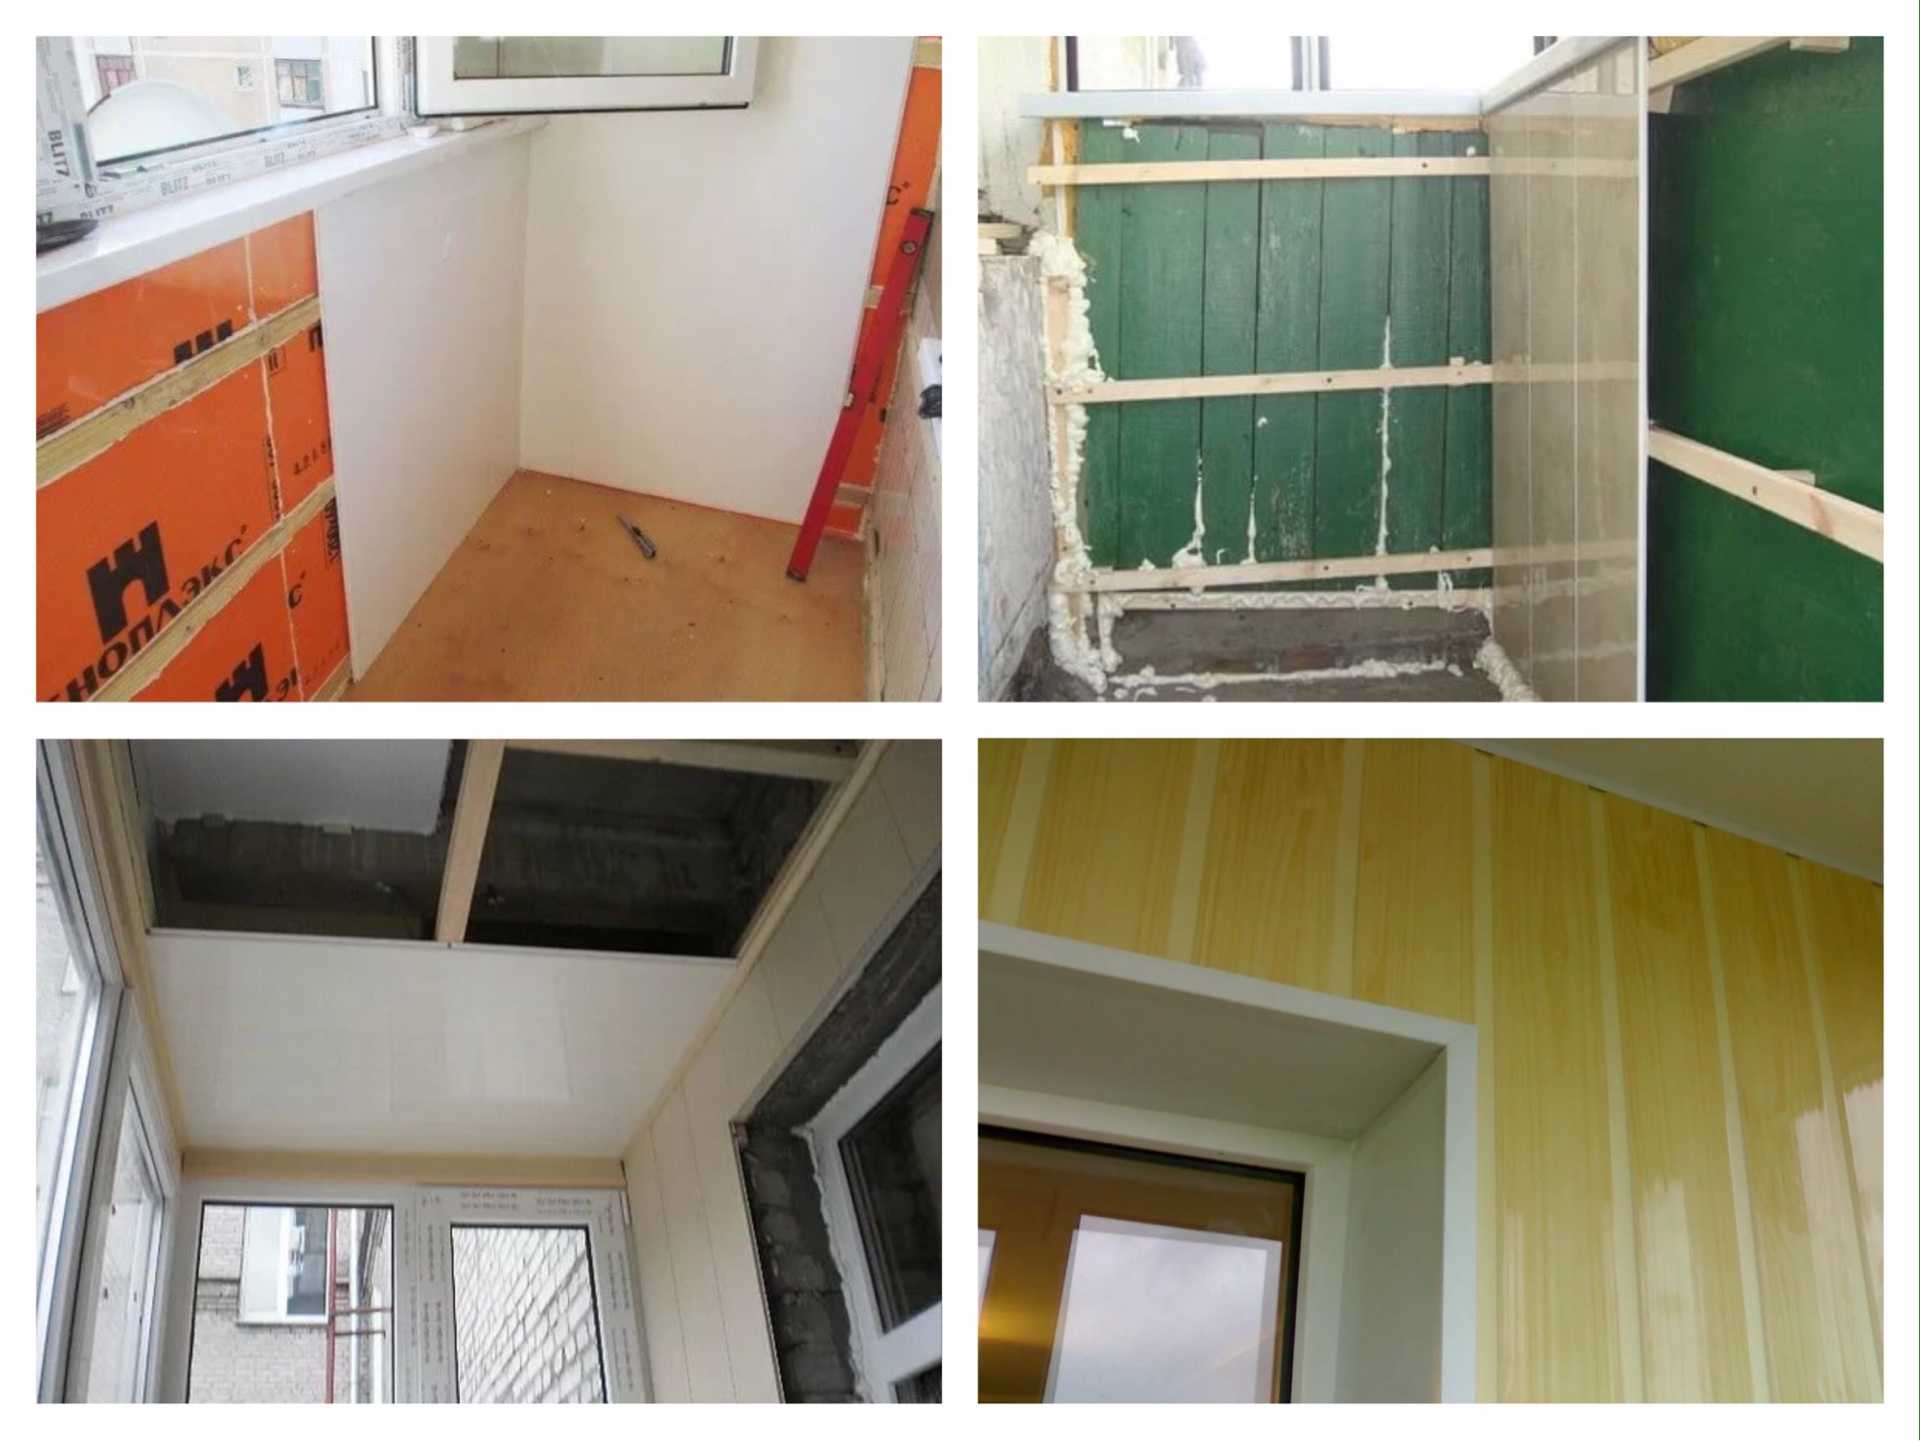 Отделка балкона пластиковыми панелями (пвх) своими руками внутри: пошаговая инструкция и фото оформления